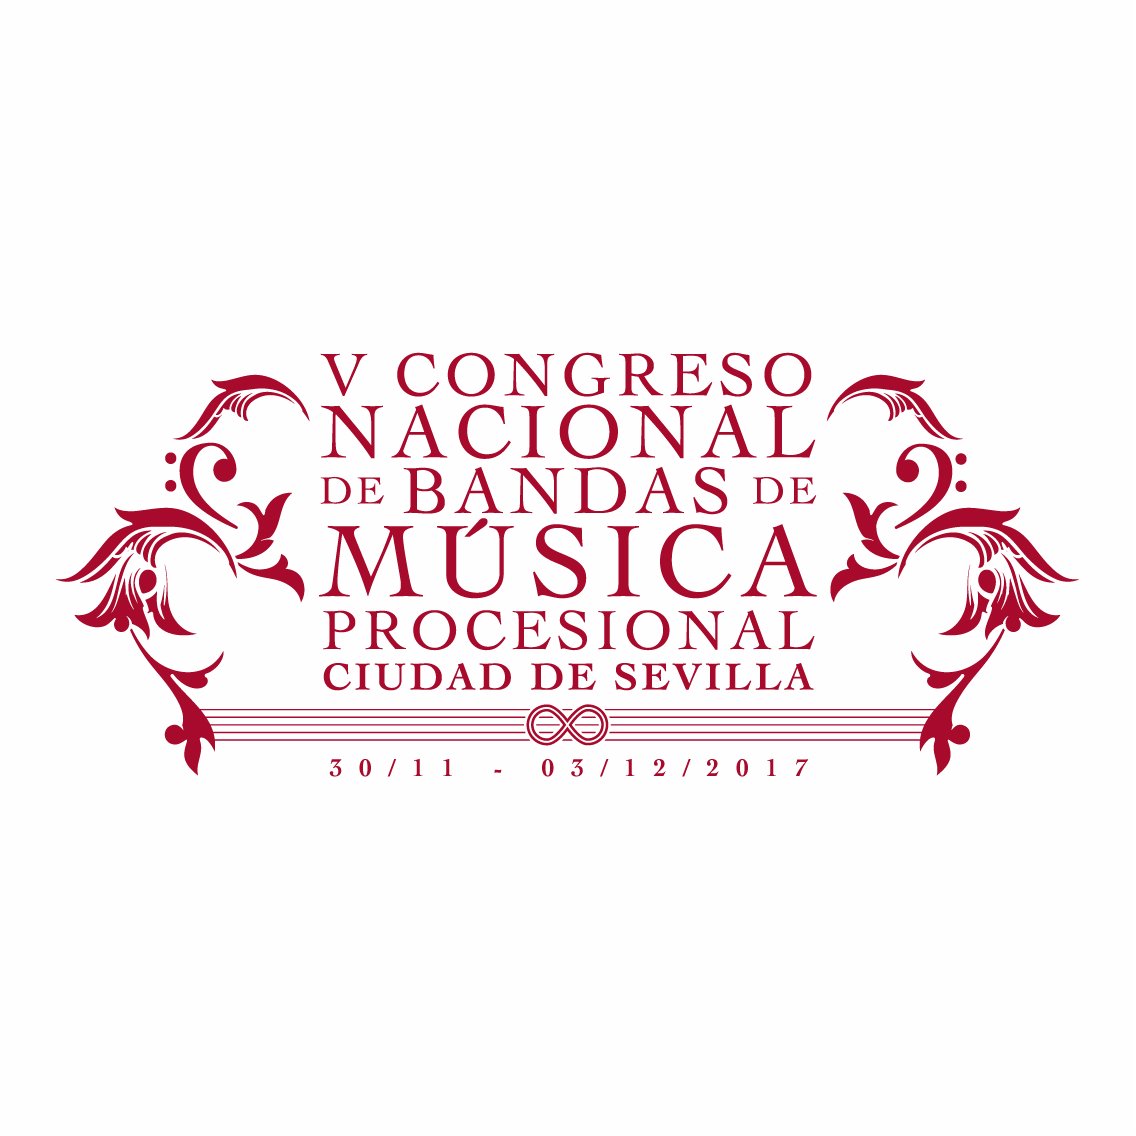 V Congreso Nacional de Bandas de Música Procesional de la ciudad de Sevilla